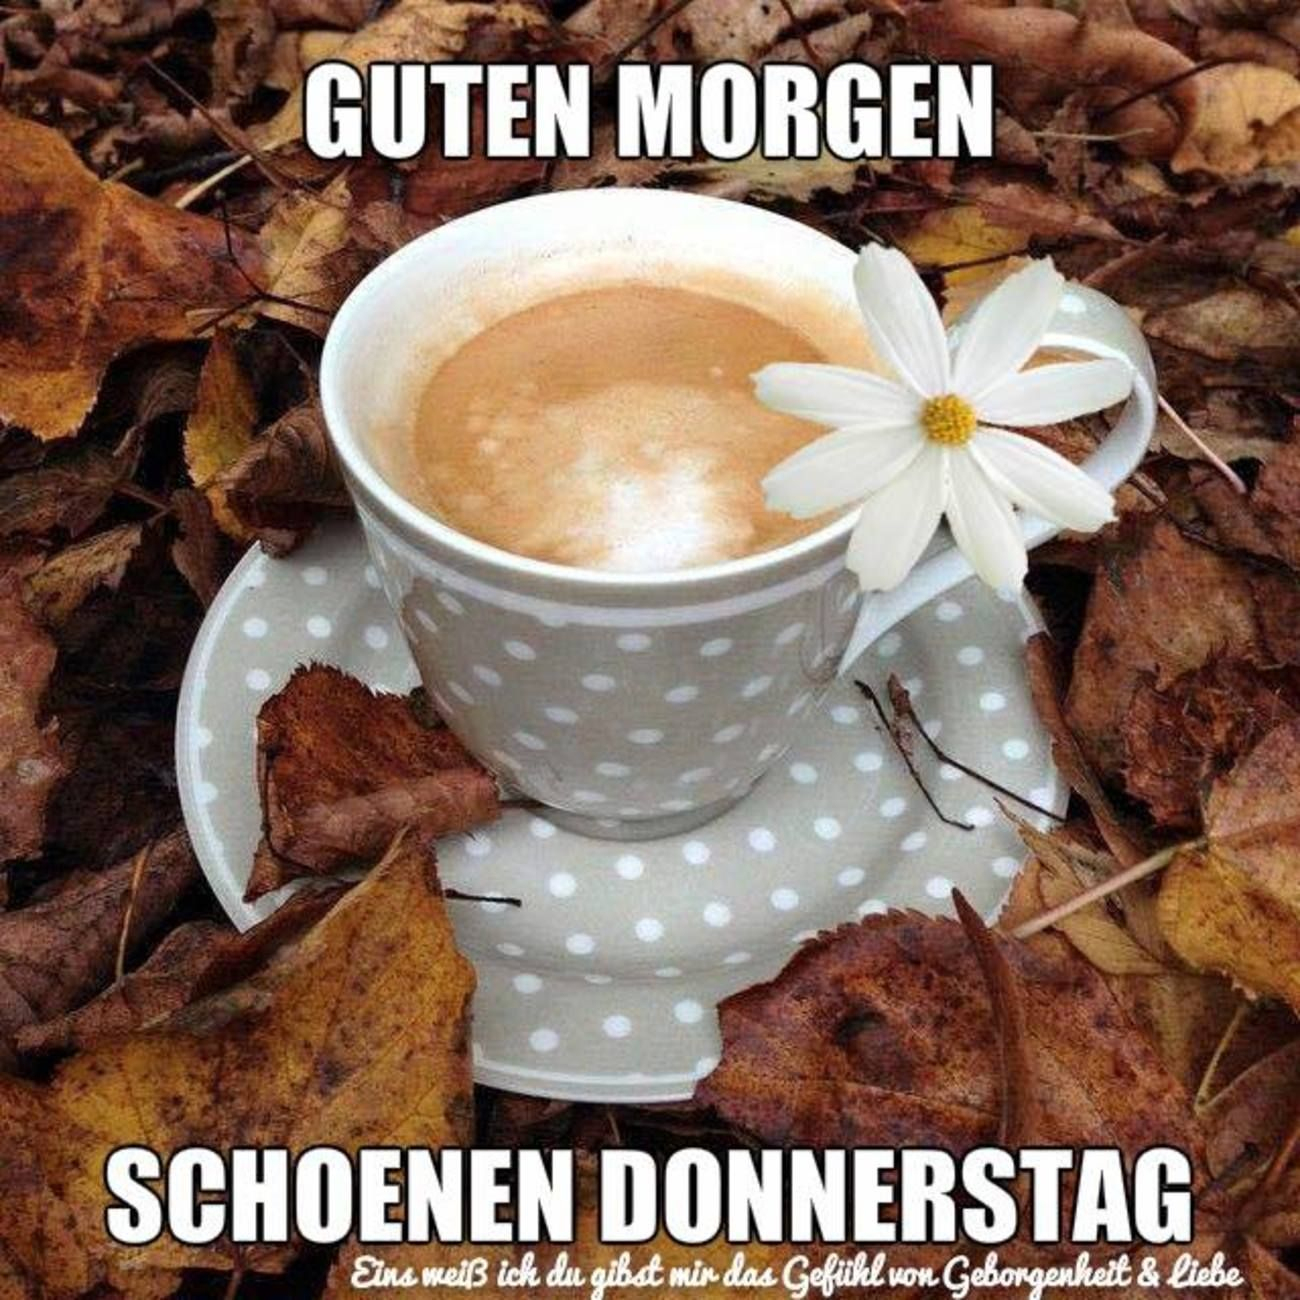 Donnerstag - Gbpicsbilder  Guten Morgen Donnerstag, Herbst Kaffee verwandt mit Guten Morgen Donnerstag Winter